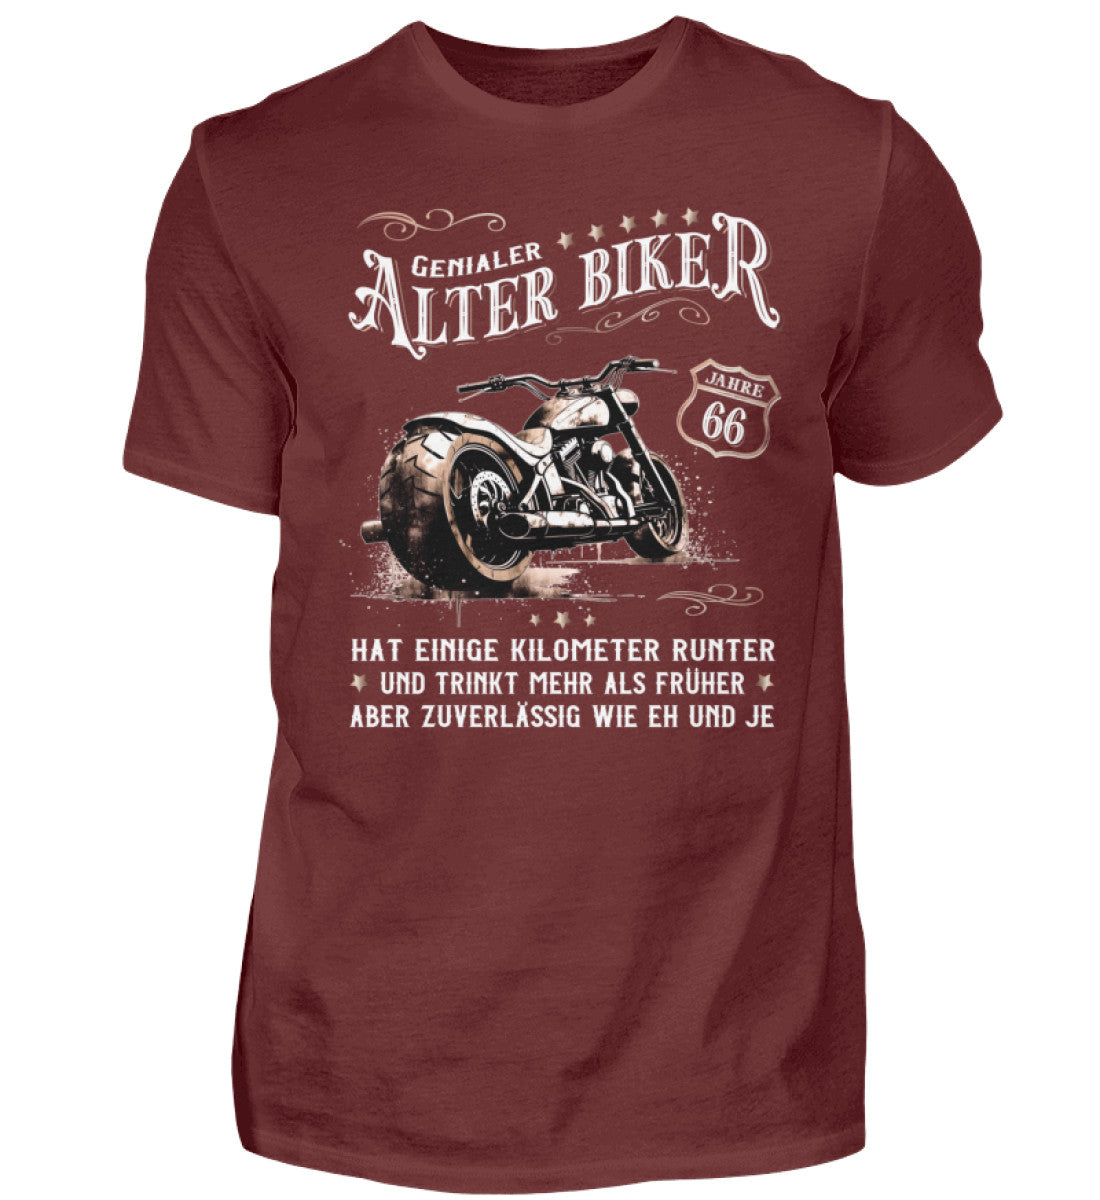 Ein Biker T-Shirt zum Geburtstag für Motorradfahrer von Wingbikers mit dem Aufdruck, Alter Biker - 66 Jahre - Einige Kilometer runter, trinkt mehr - aber zuverlässig wie eh und je - in weinrot.